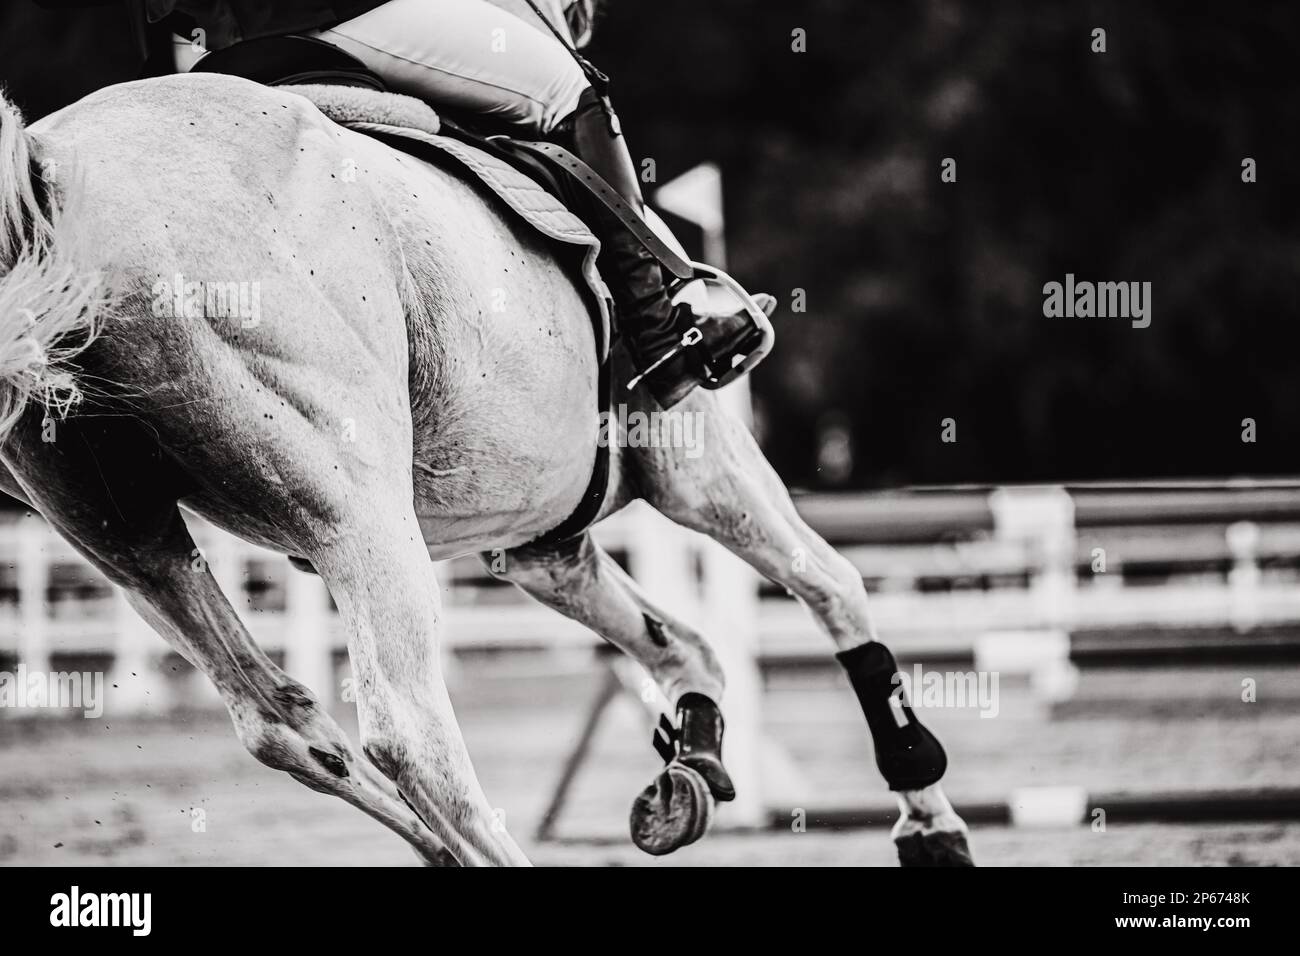 Ein Schwarz-Weiß-Bild eines wunderschönen starken Rennpferdes mit einem Reiter im Sattel, der zur Barriere galoppiert und mit seinen Hufen Staub aufwirbelt. Äqu Stockfoto